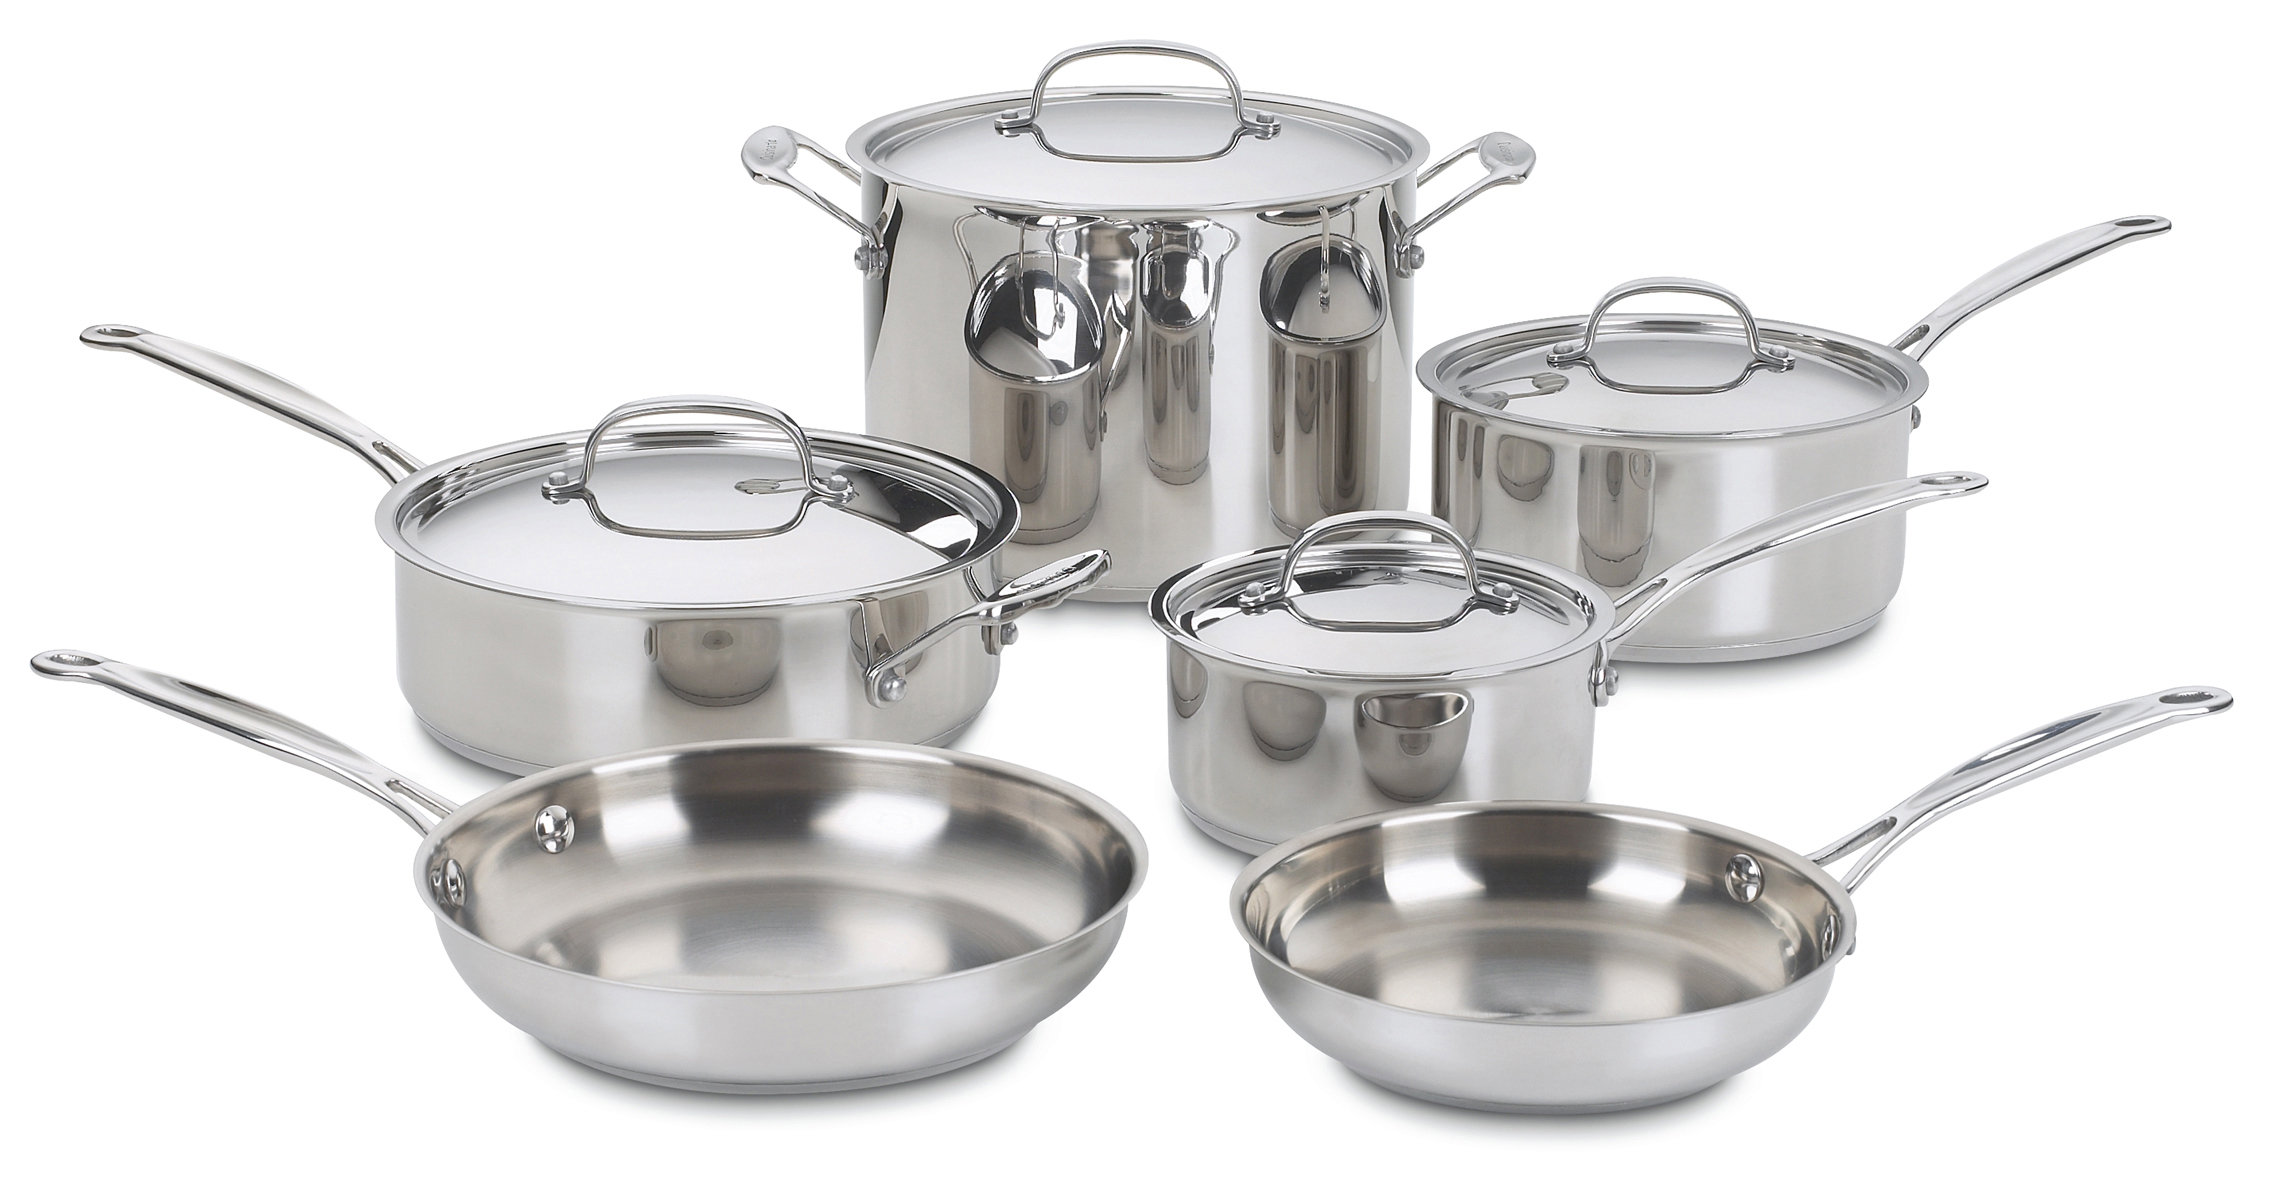 https://assets.wfcdn.com/im/45530475/compr-r85/1225/122551193/cuisinart-chefs-classic-10-piece-stainless-steel-cookware-set.jpg